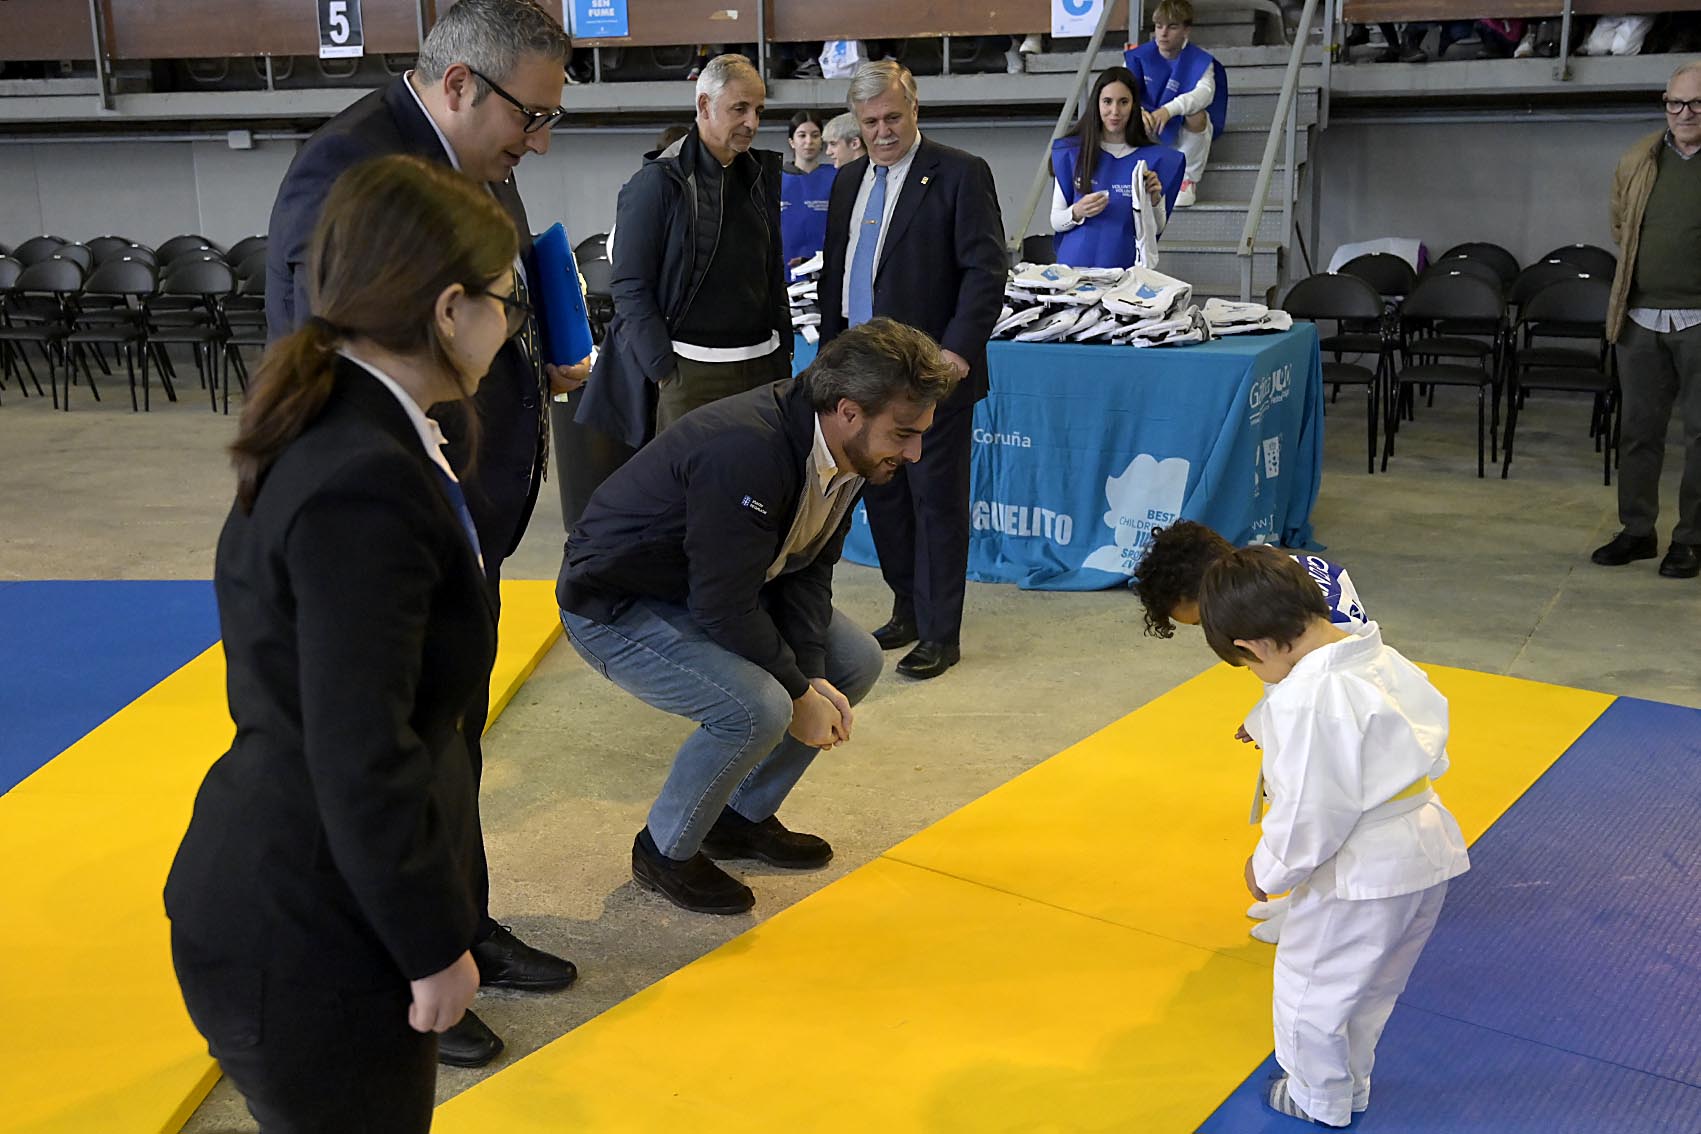 Image 0 of article Diego Calvo recolle o premio concedido á Xunta na 36ª edición do Trofeo de judo Miguelito